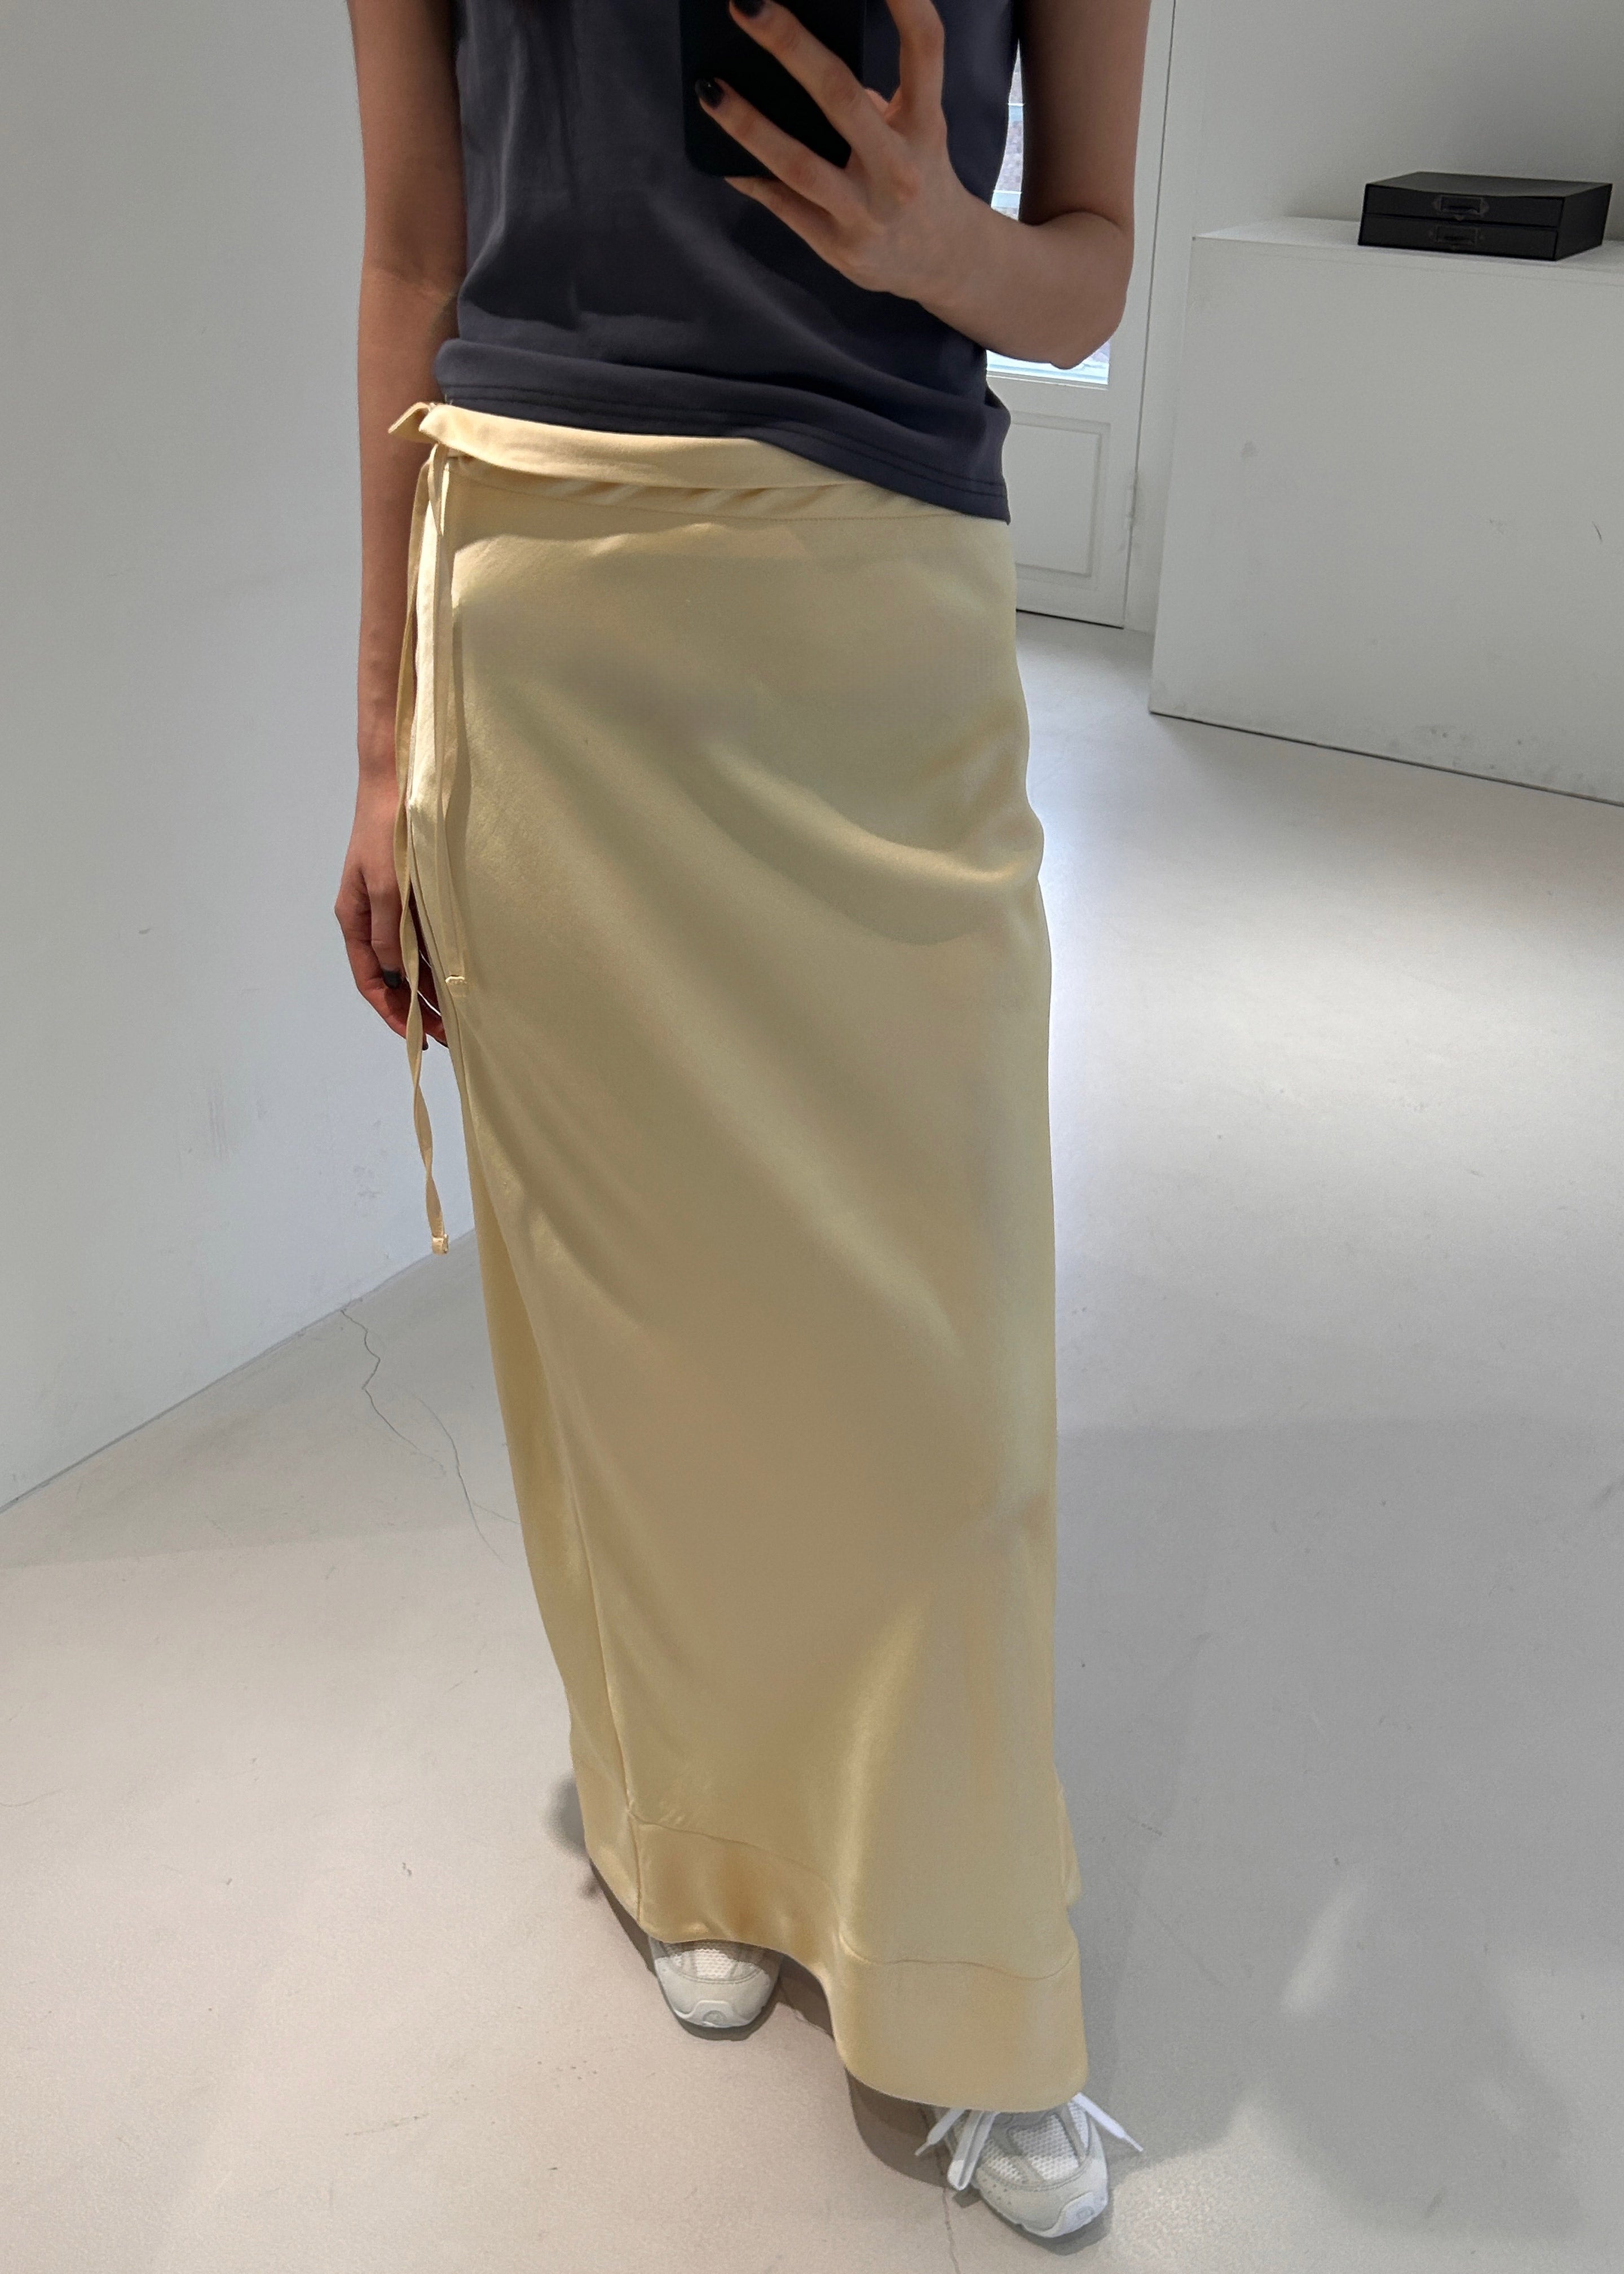 Siovhan Satin Skirt - Yellow - 10